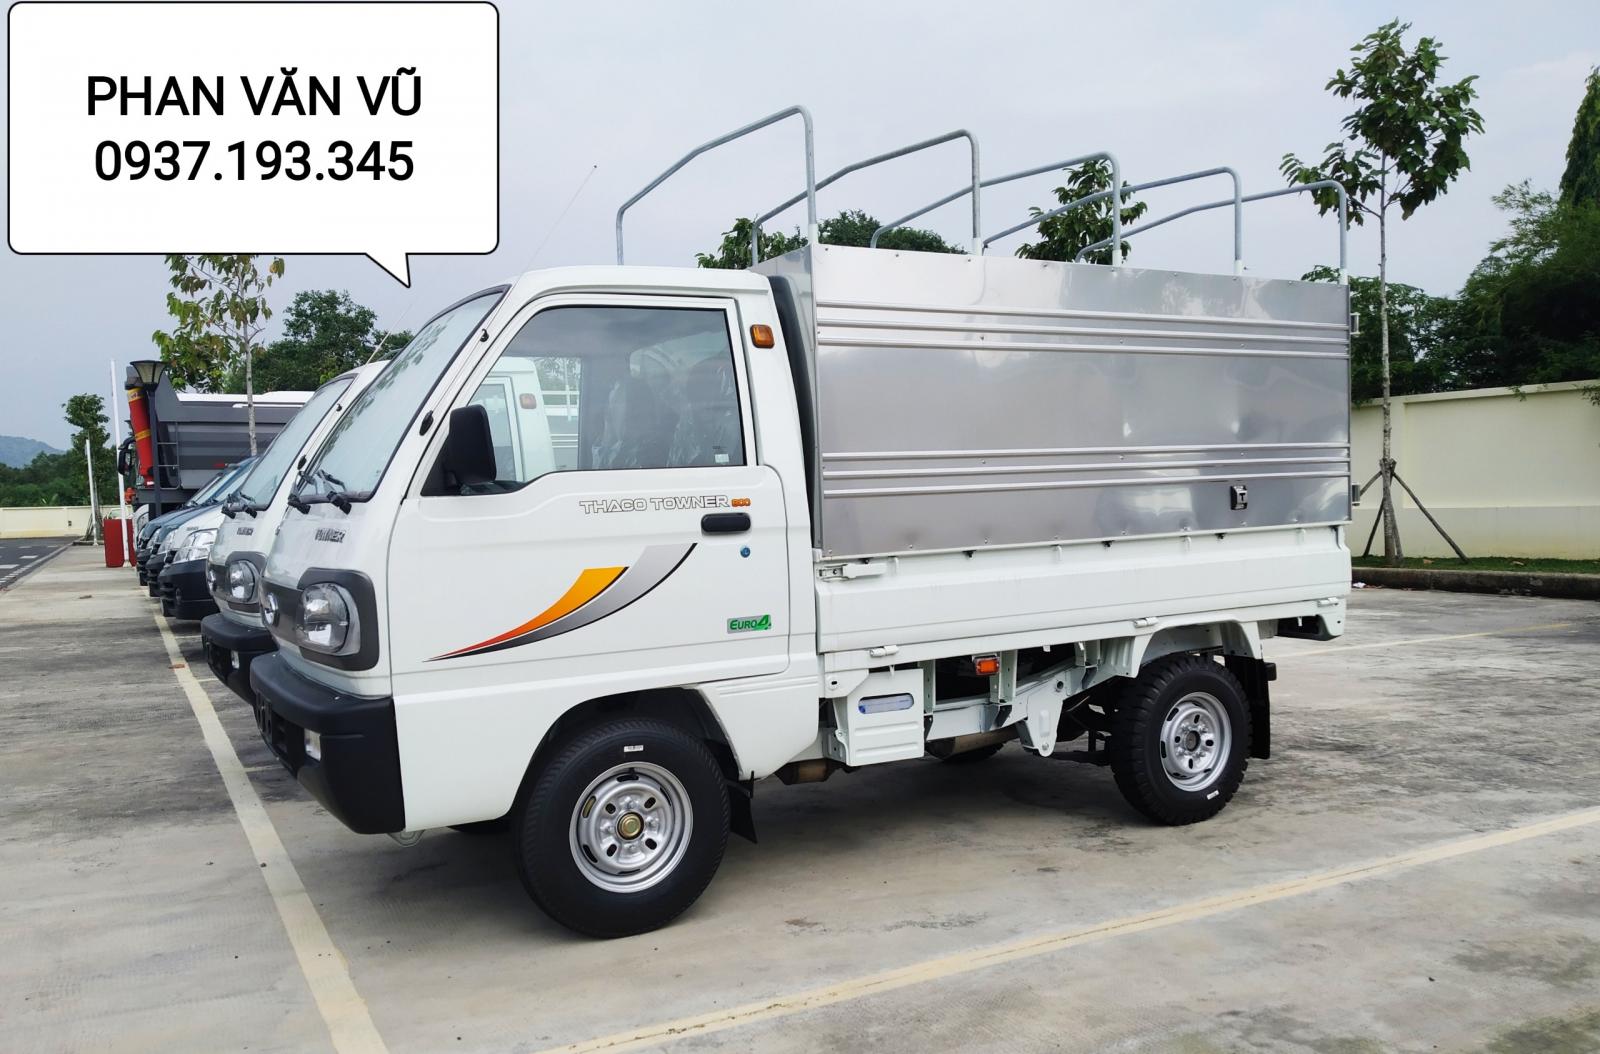 Mua xe tải công nghệ Suzuki giá rẻ, hỗ trợ trả góp 70% tại Bà Rịa Vũng Tàu-0